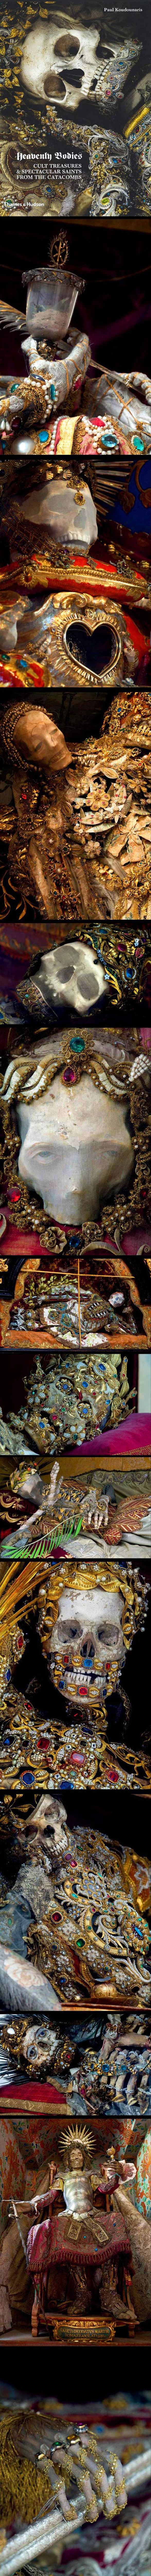 400 godina stare lubanje ukrašene zlatom iz raznih crkava Europe